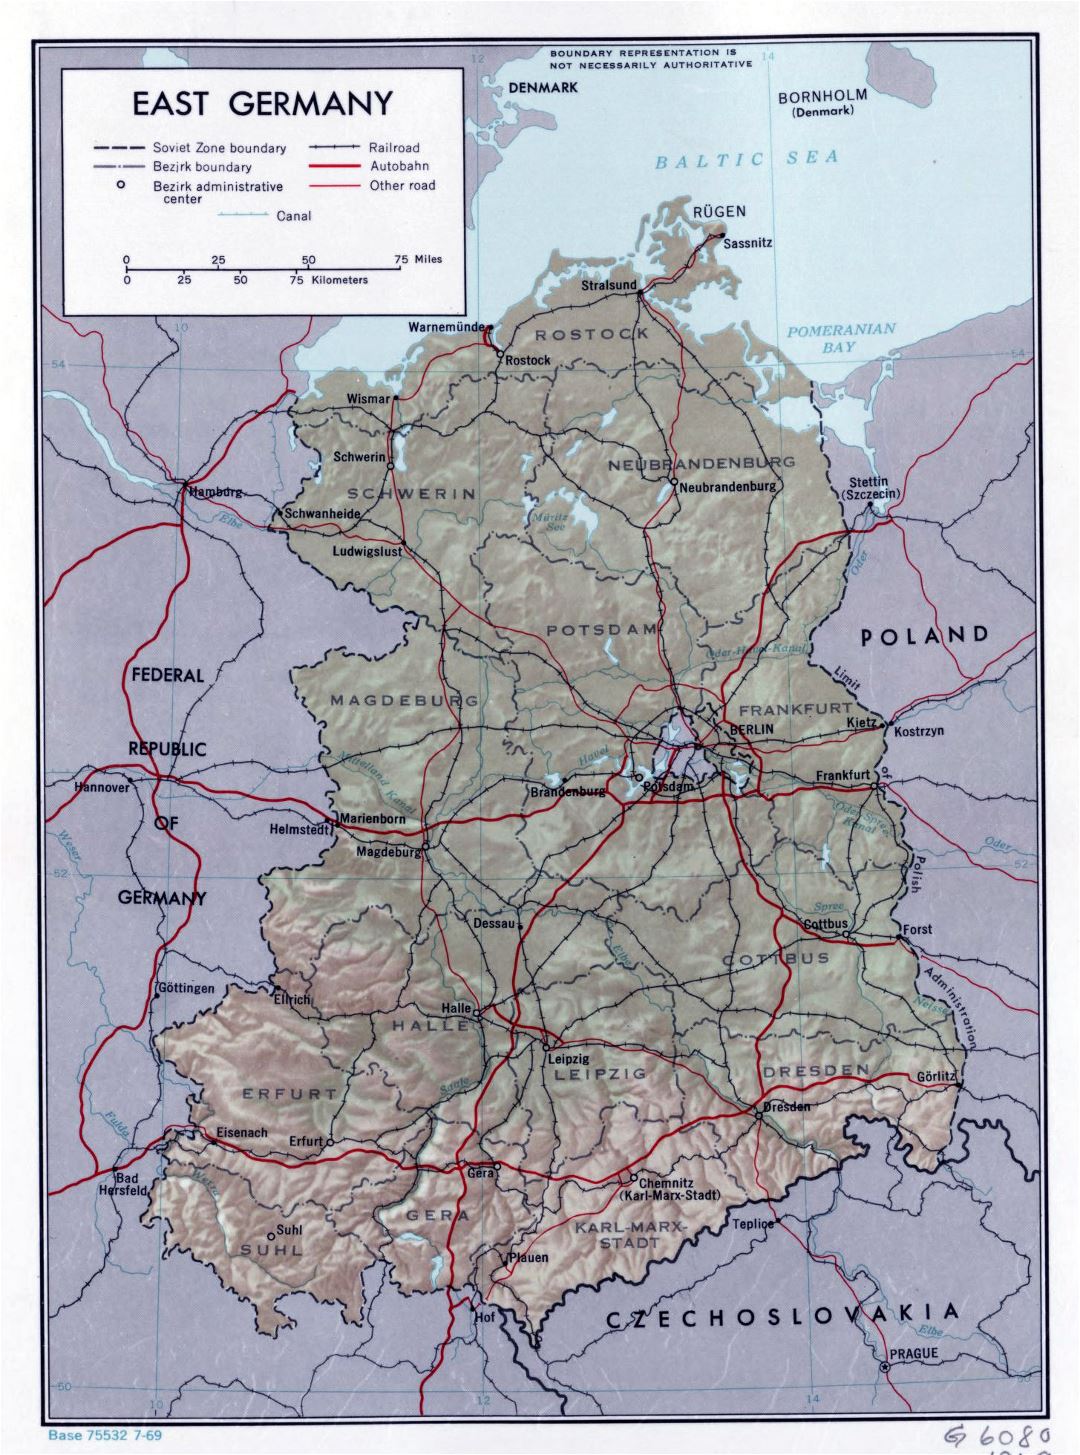 Mapa político y administrativo grande de Alemania del Este con alivio, carreteras, vías férreas y las principales ciudades - 1969